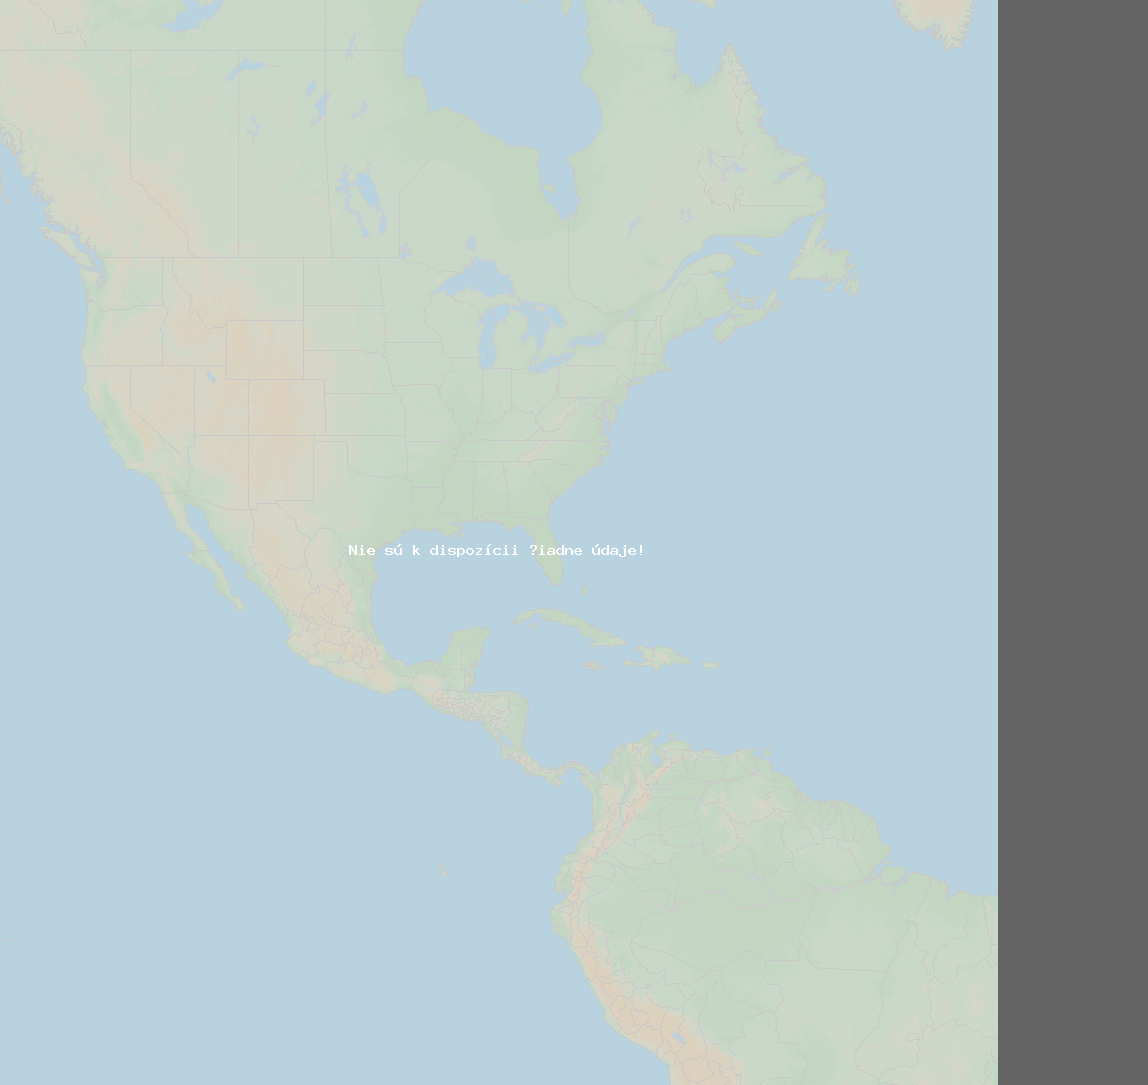 Pomer bleskov (Stanica Monroe) North America 2021 Február